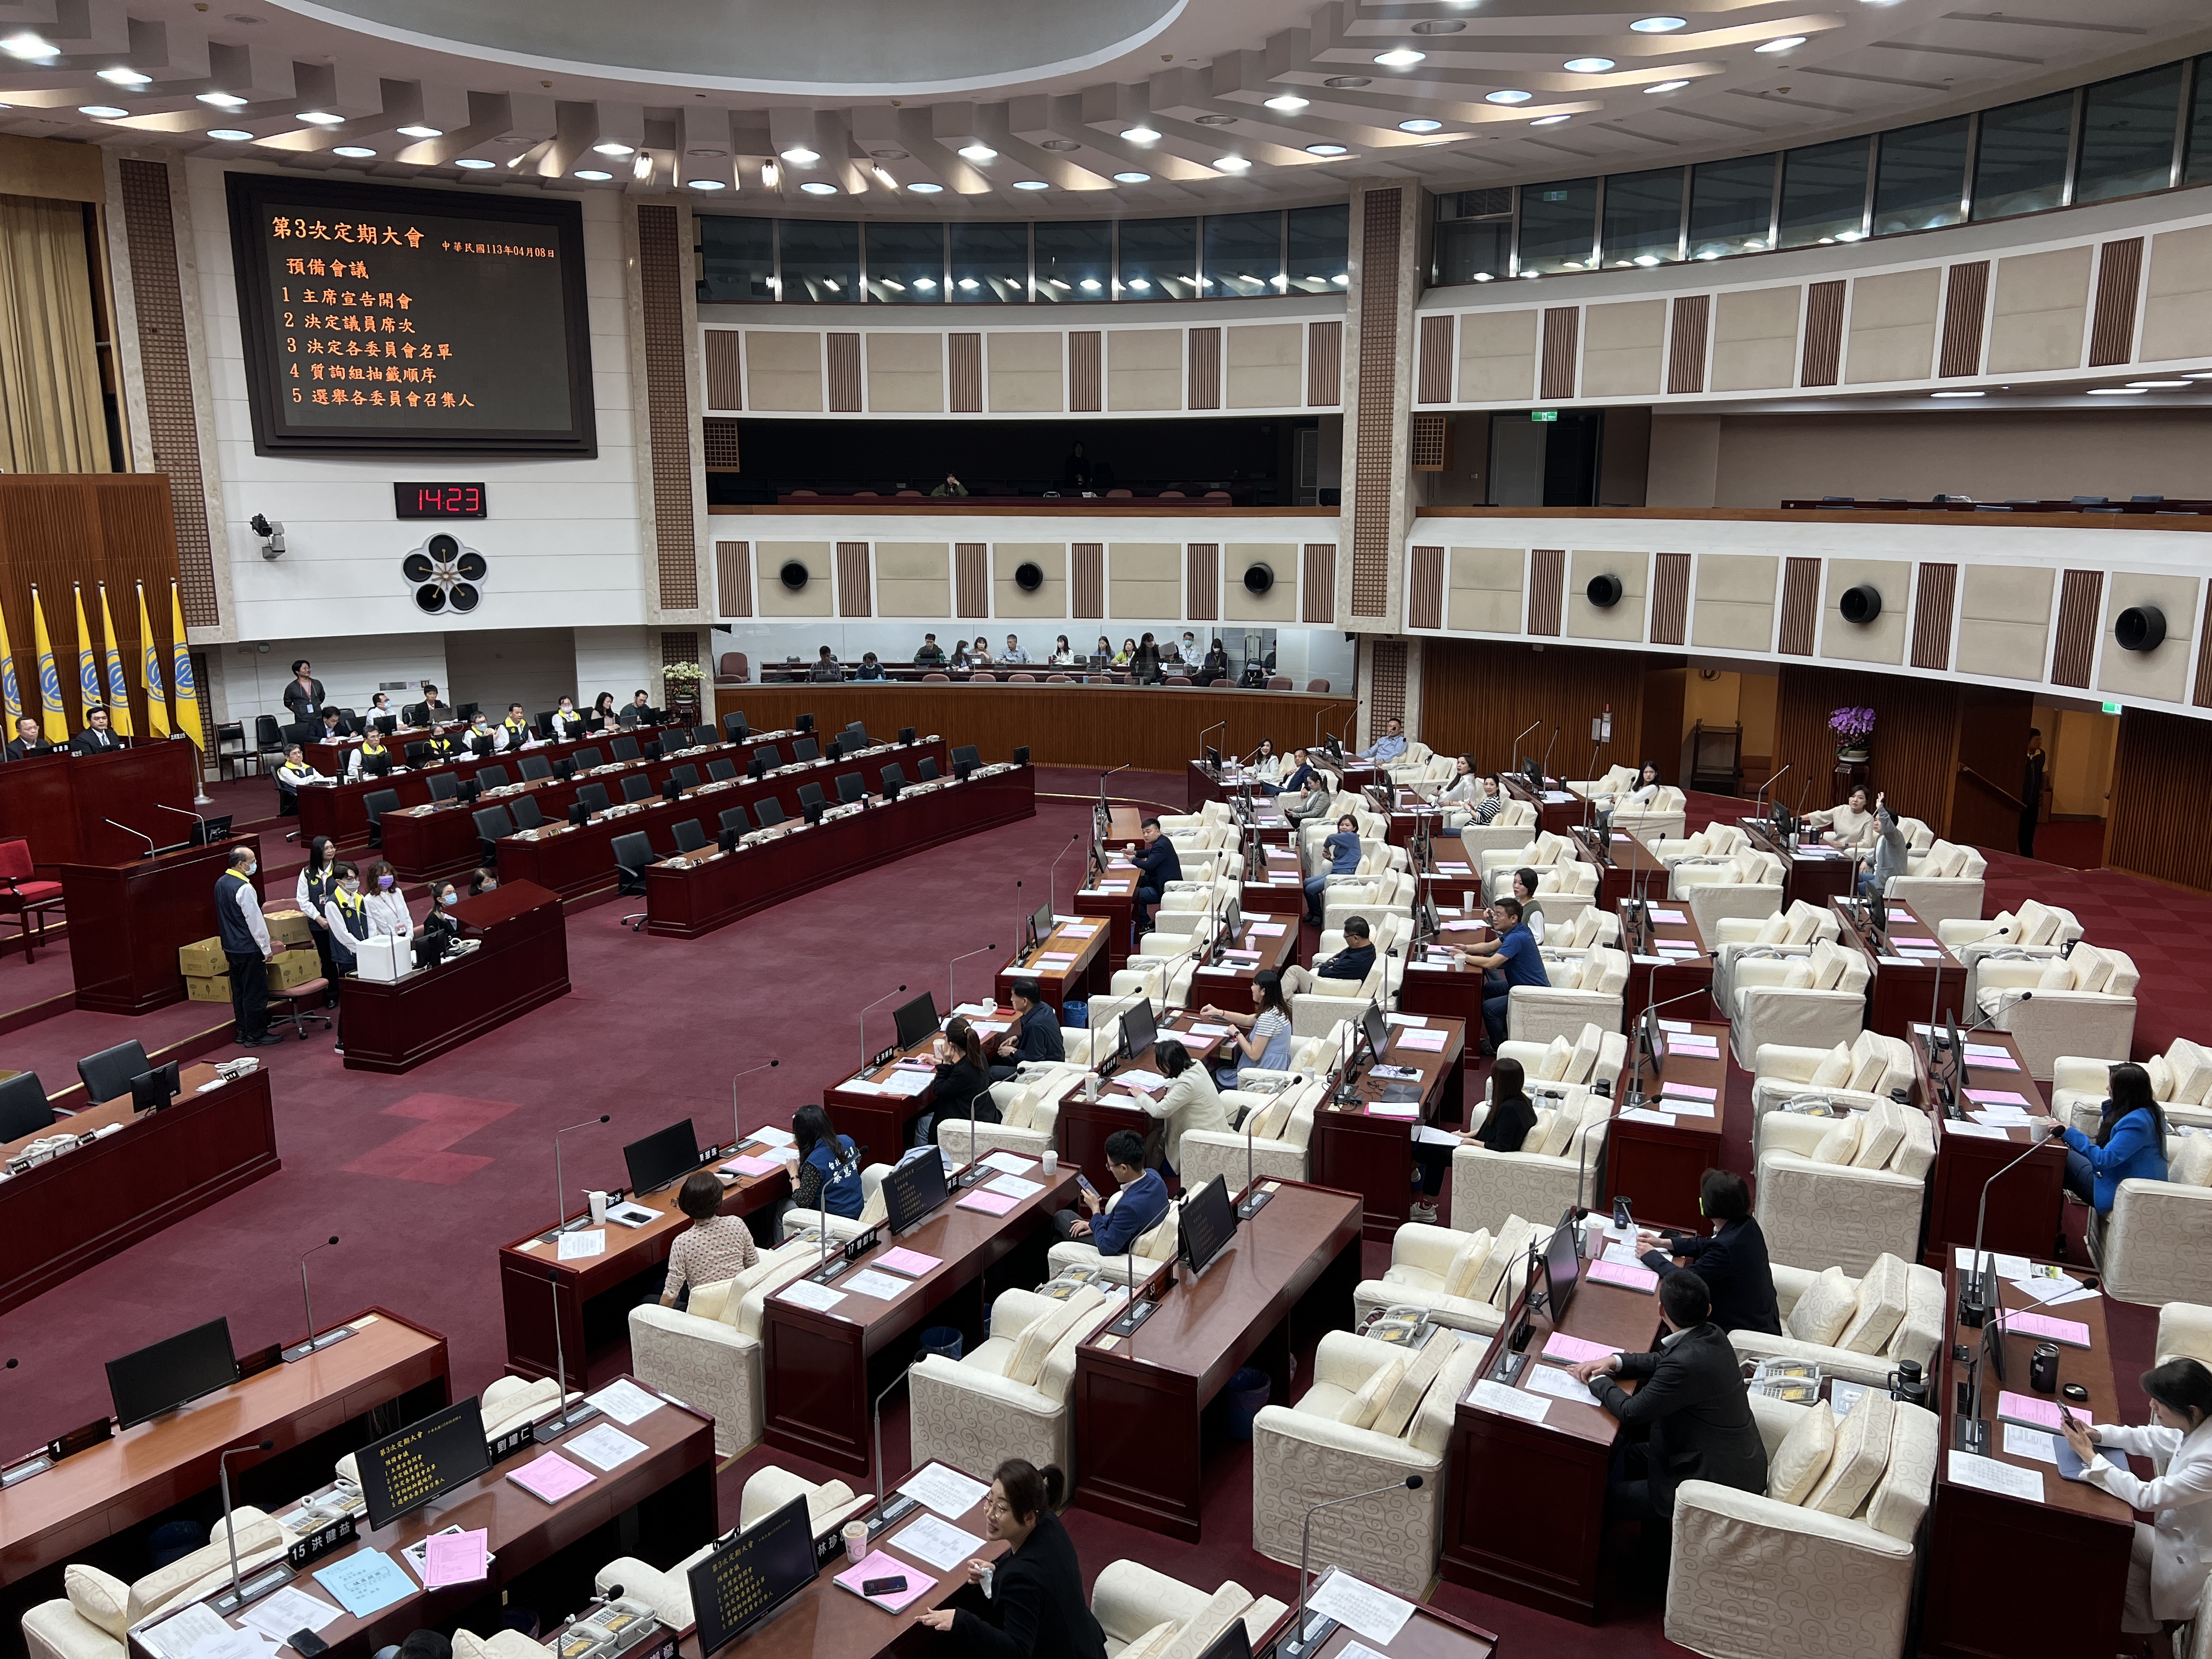 台北市议会今天开议，议员报到后进行各委员会分组抽签。记者钟维轩／摄影